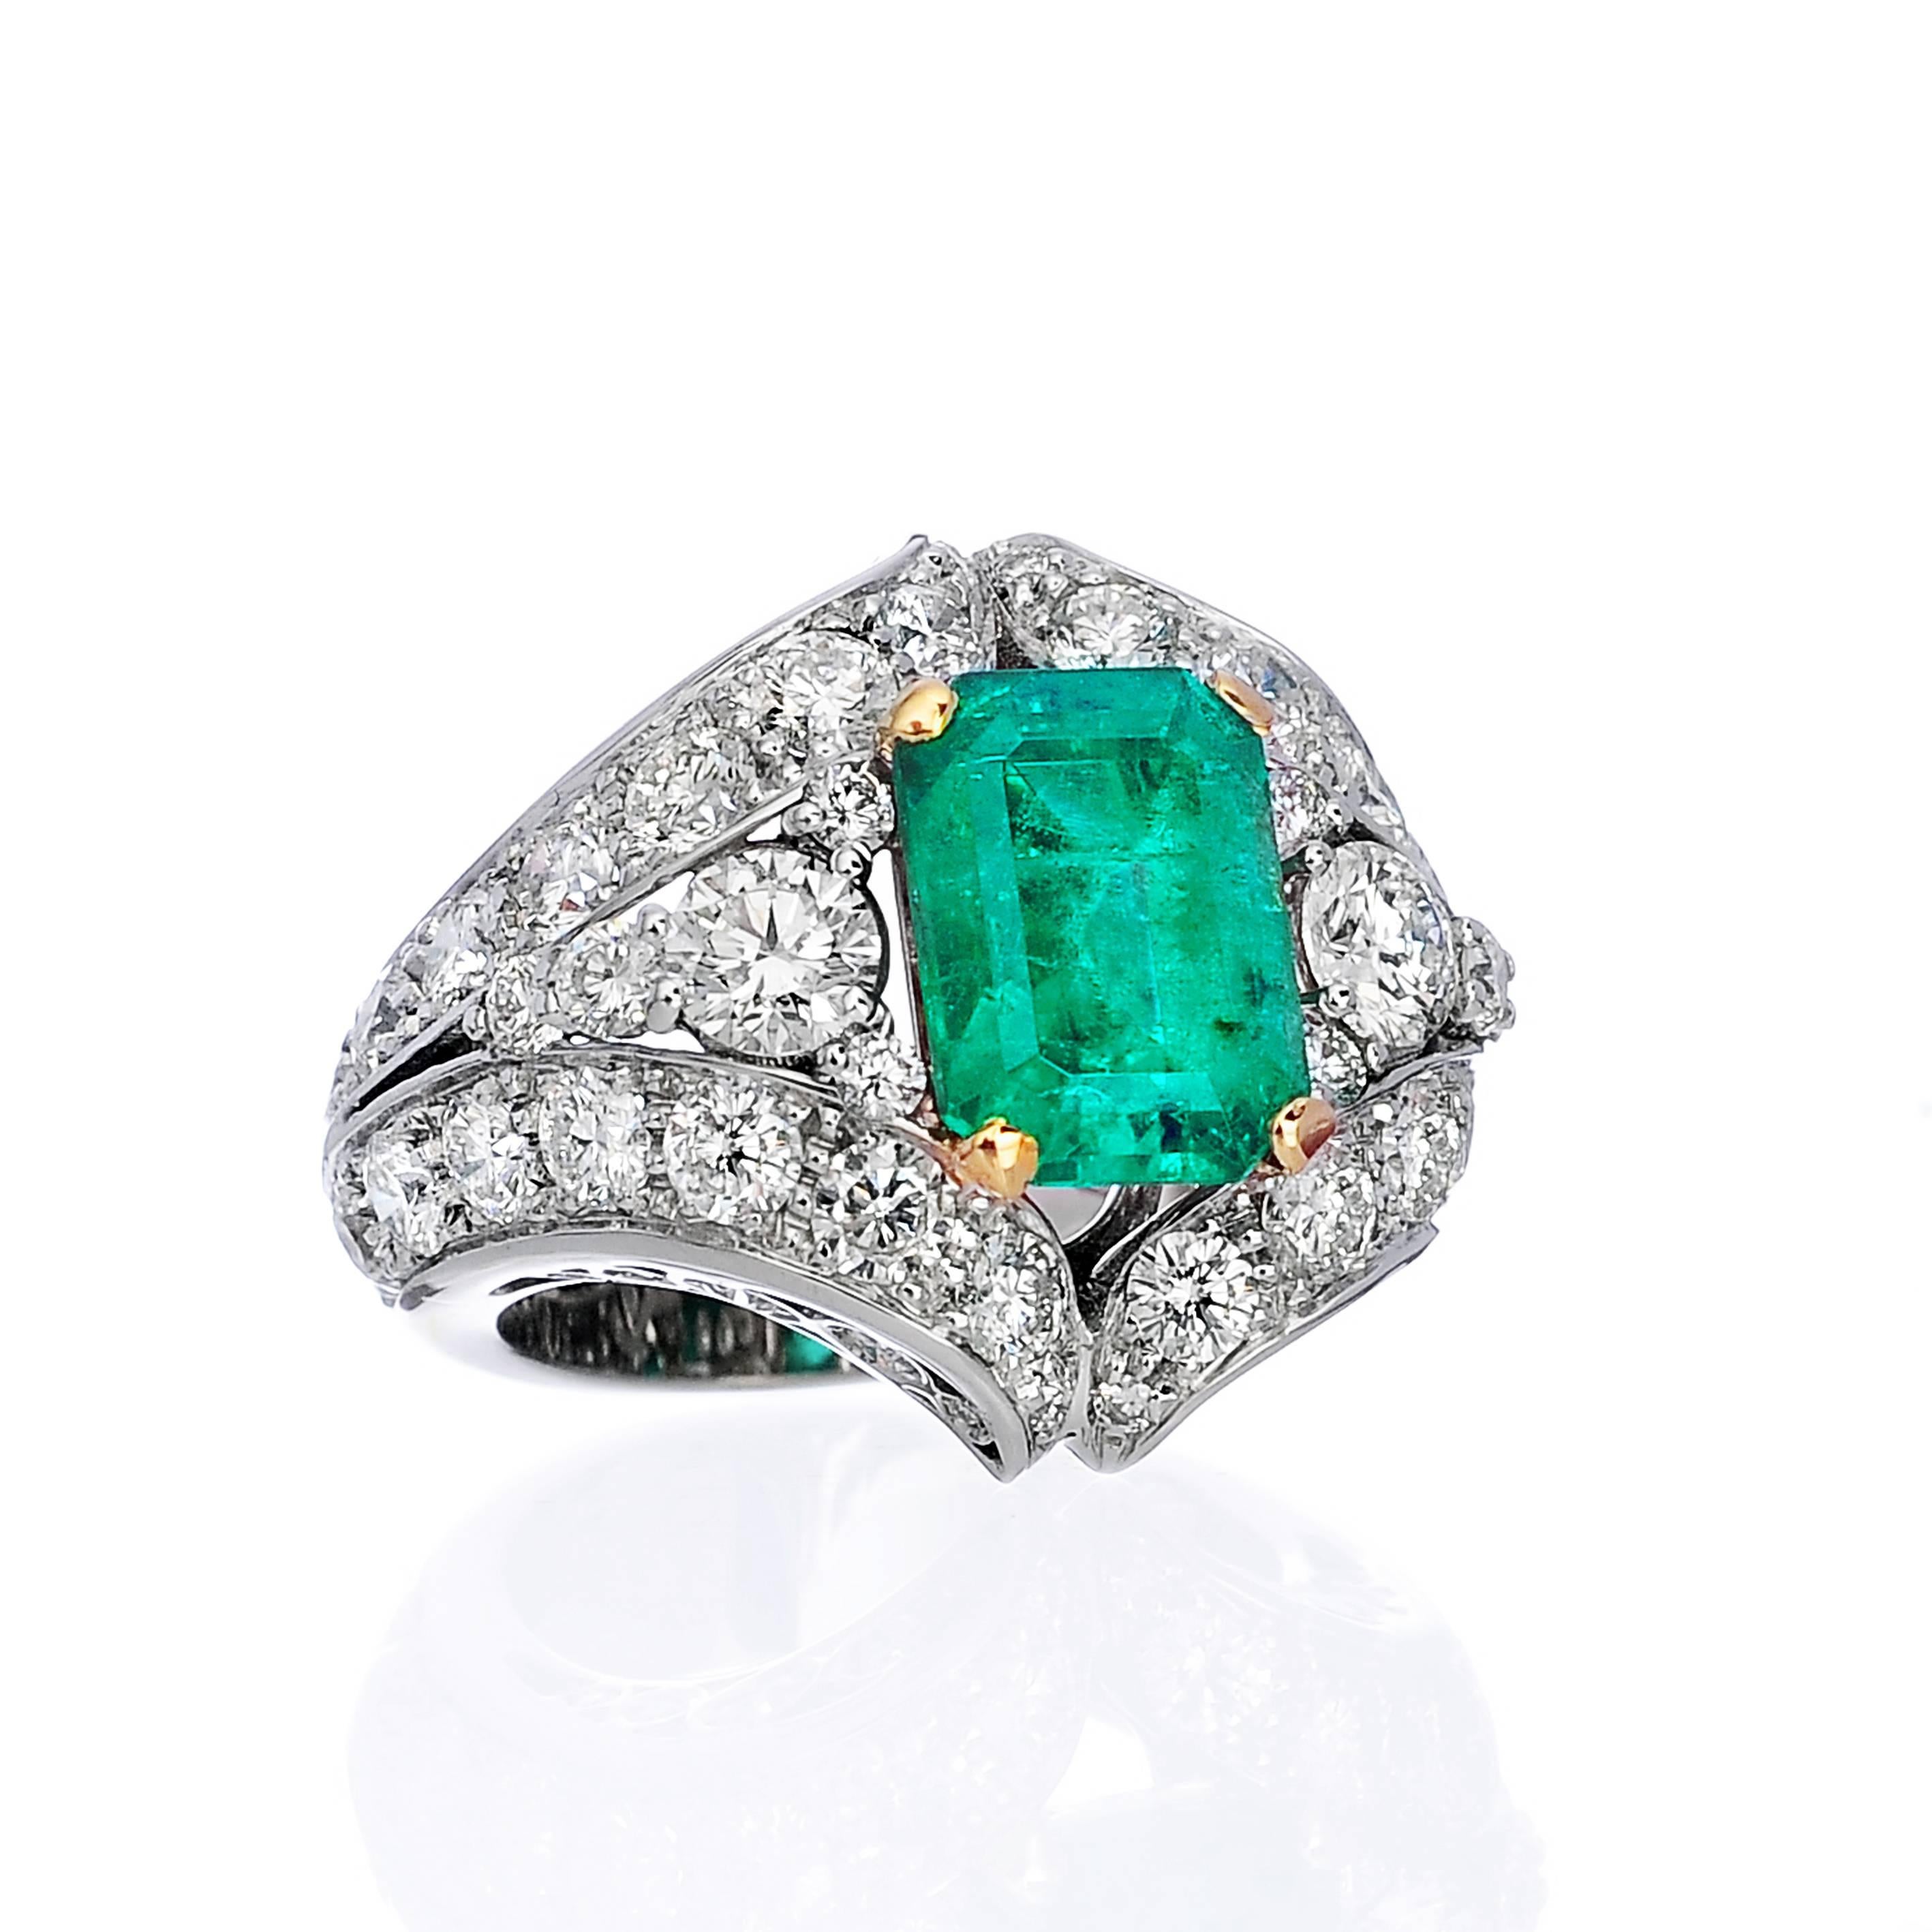 18k white gold Emerald and White Diamonds Ring. Unique Piece.
Emerald: ct 3.80 apx
Diamonds: ct 7.00 apx